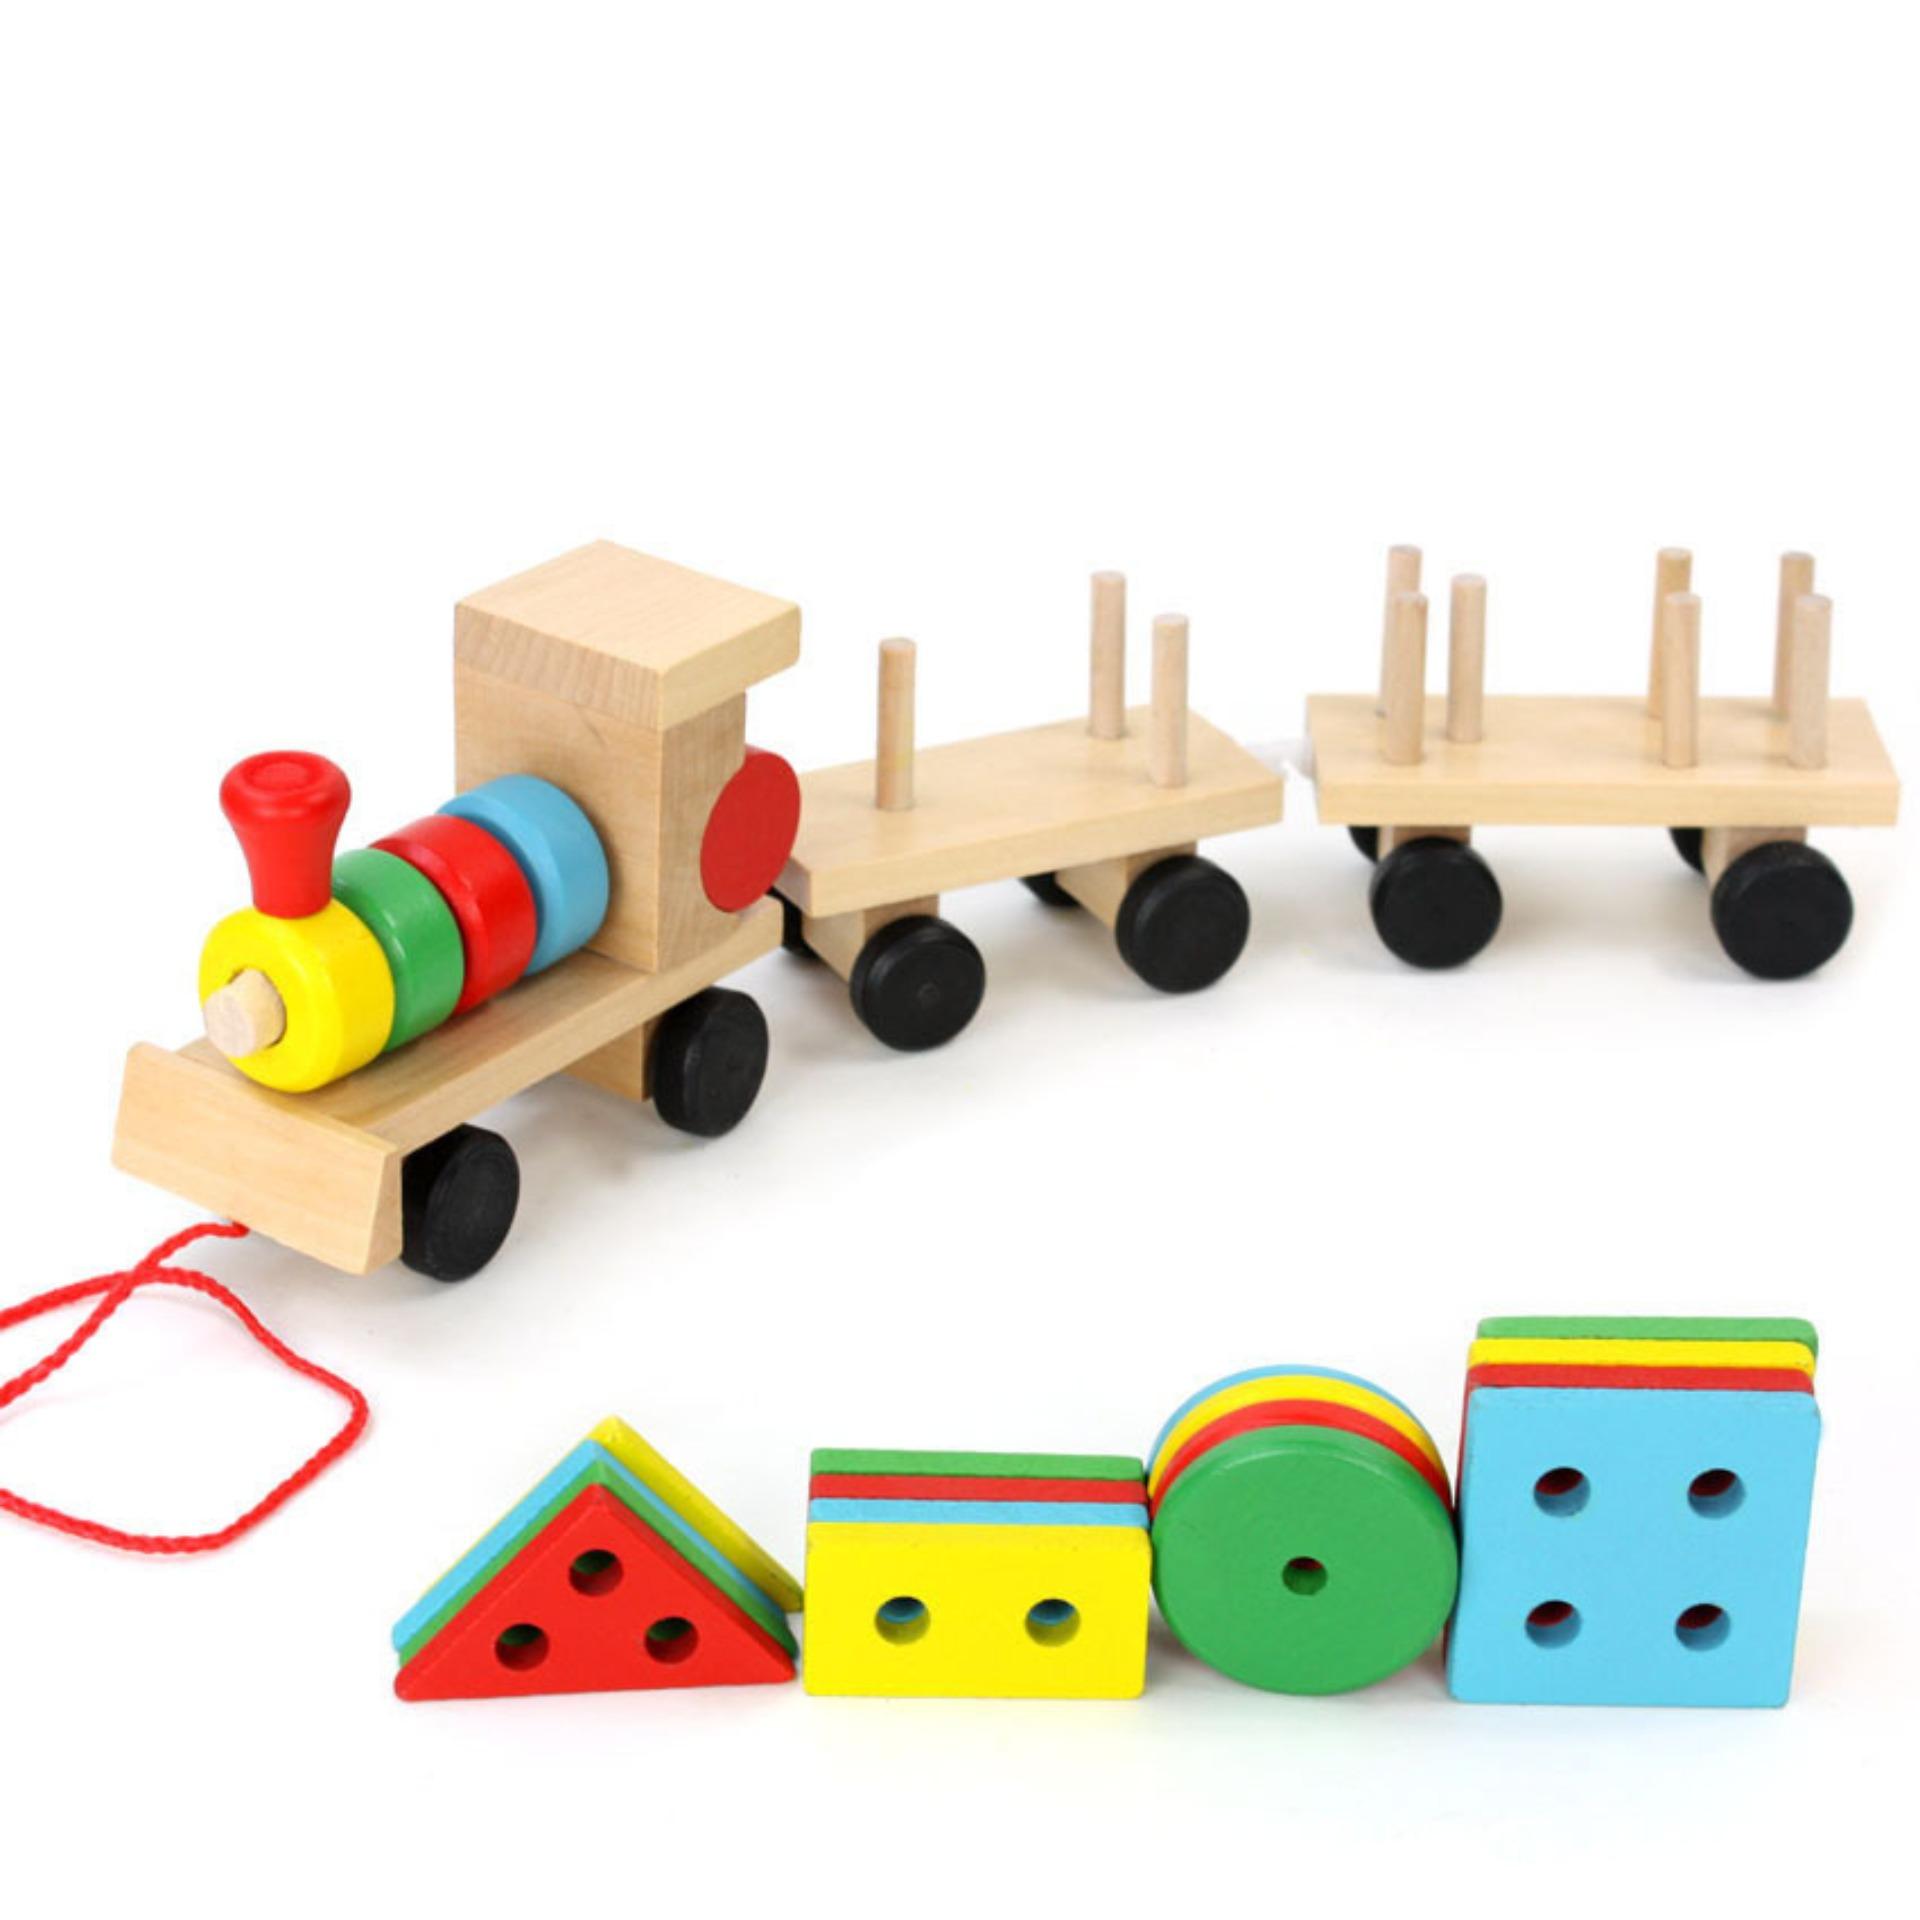 Đồ chơi đoàn tàu hỏa thả hình 16 khối gỗ phát triển tư duy cho bé